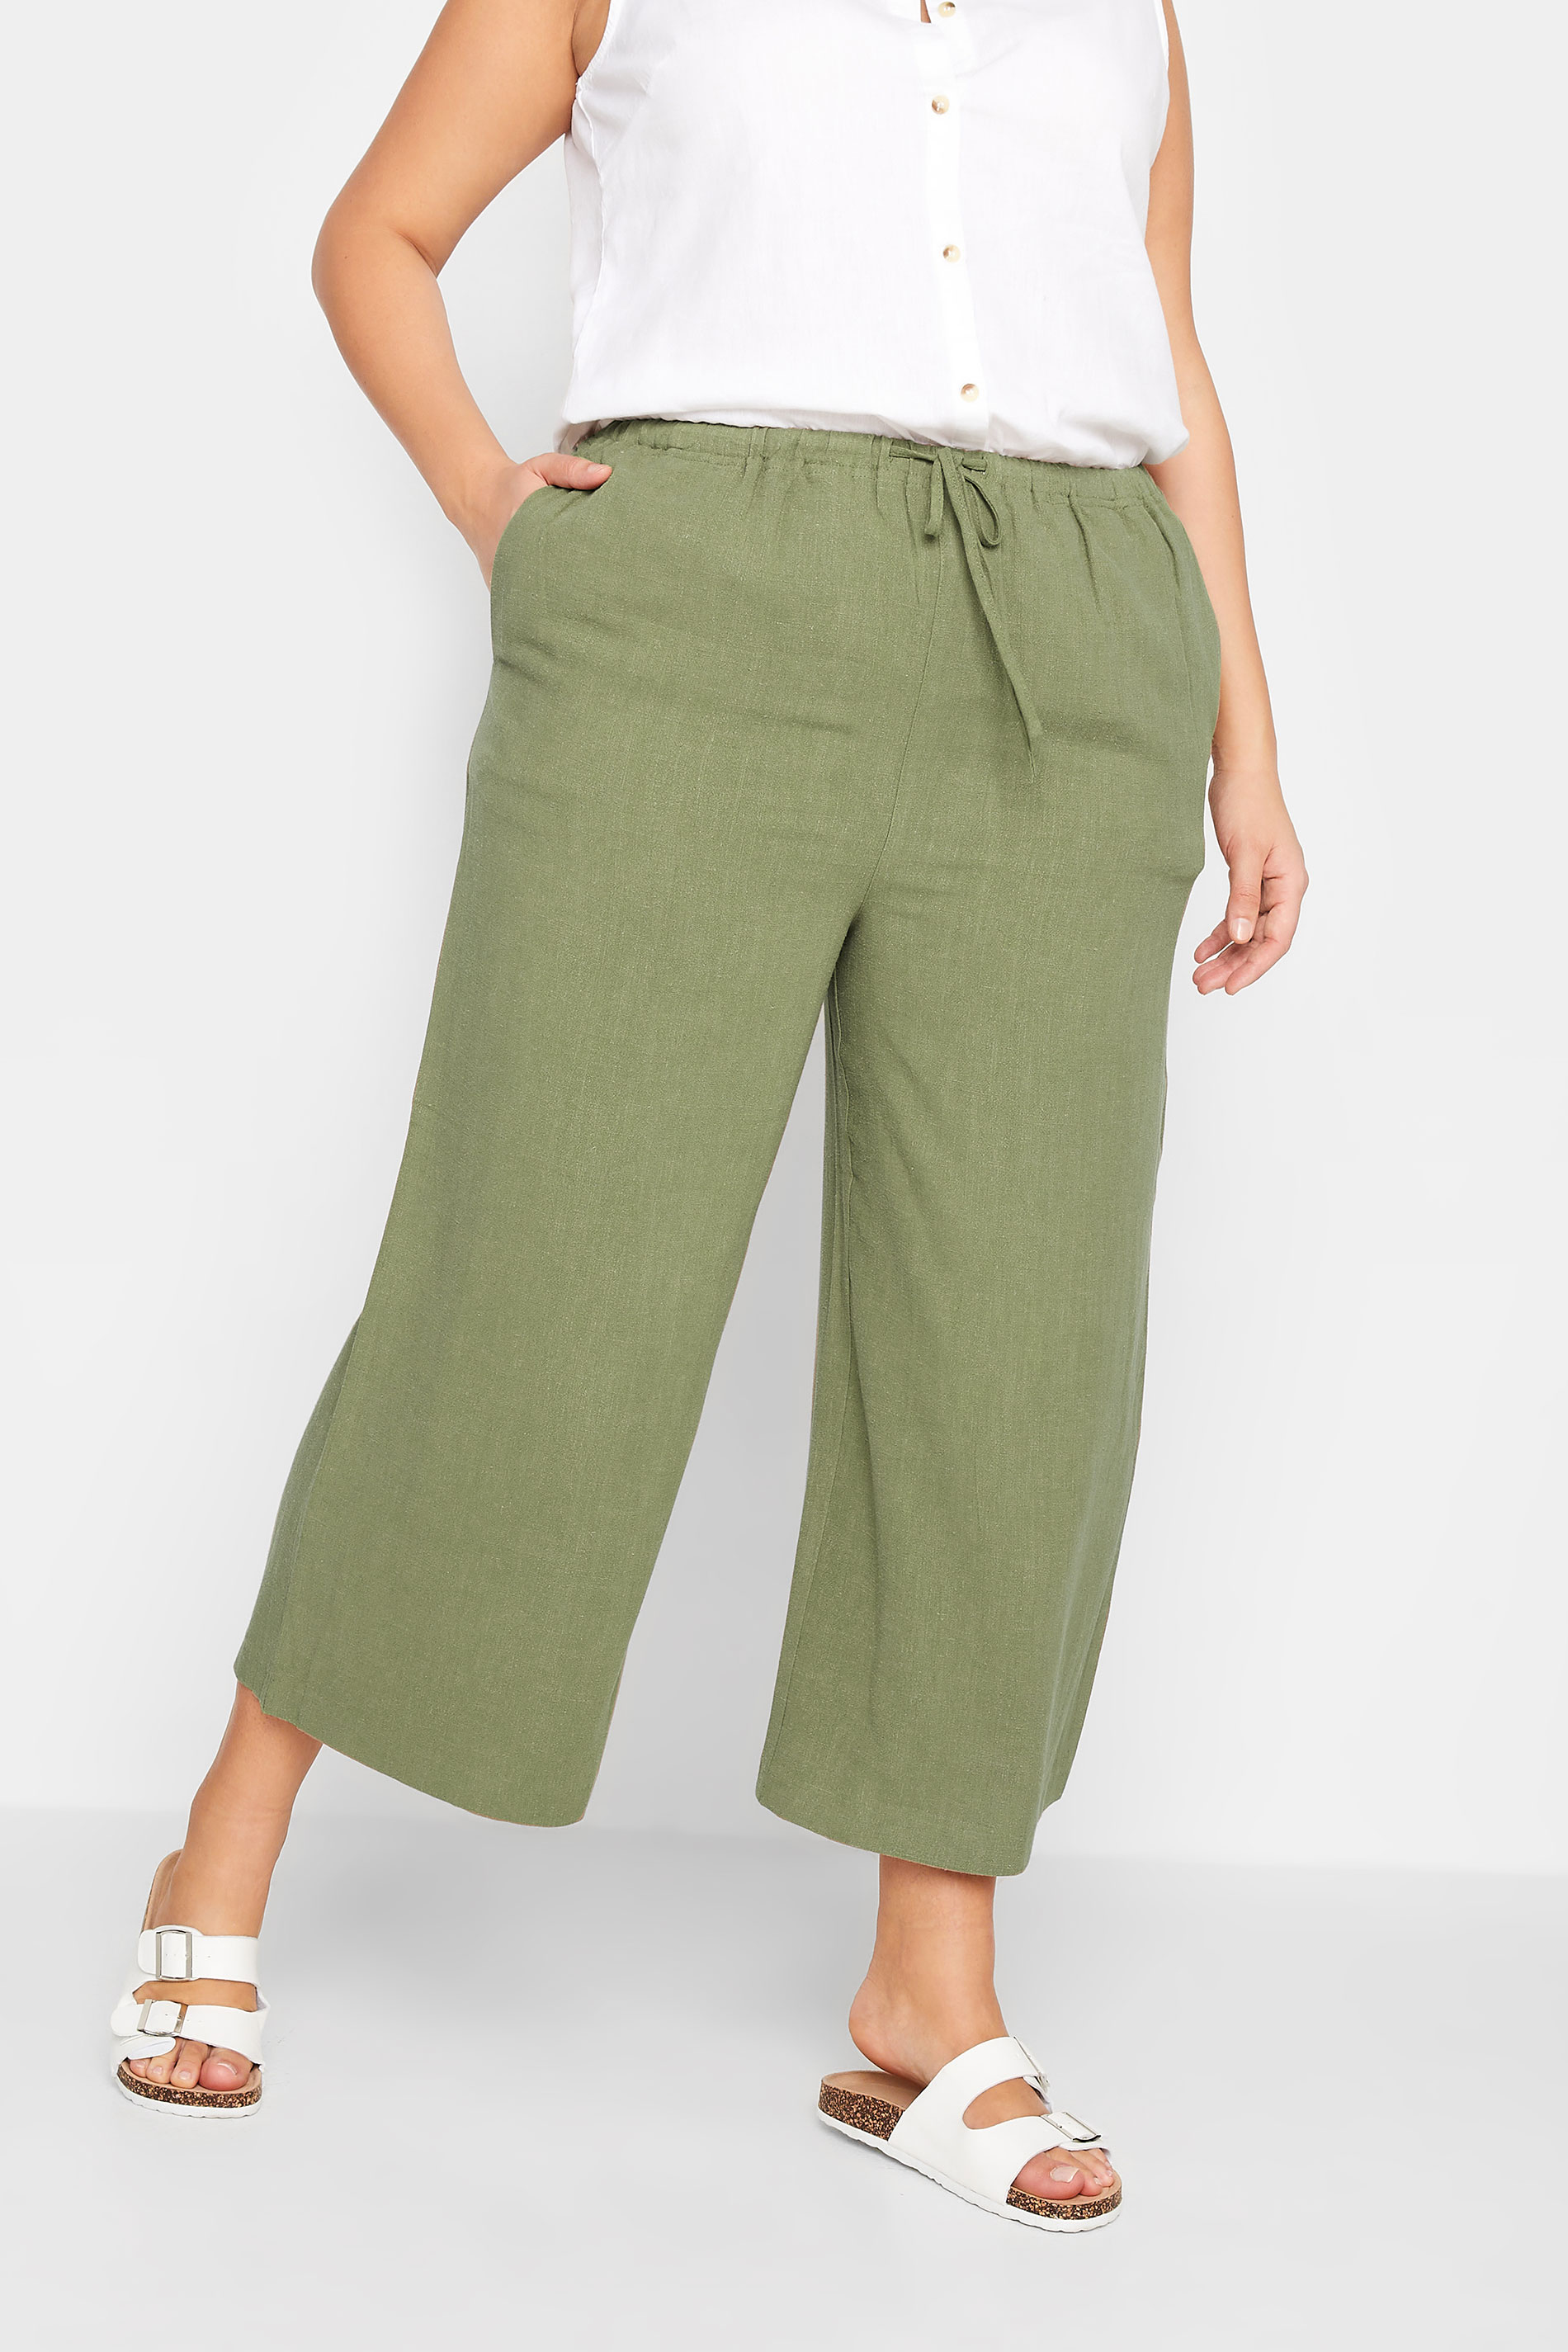 LTS Tall Women's Khaki Green Wide Leg Cropped Linen Look Trousers | Long Tall Sally  1